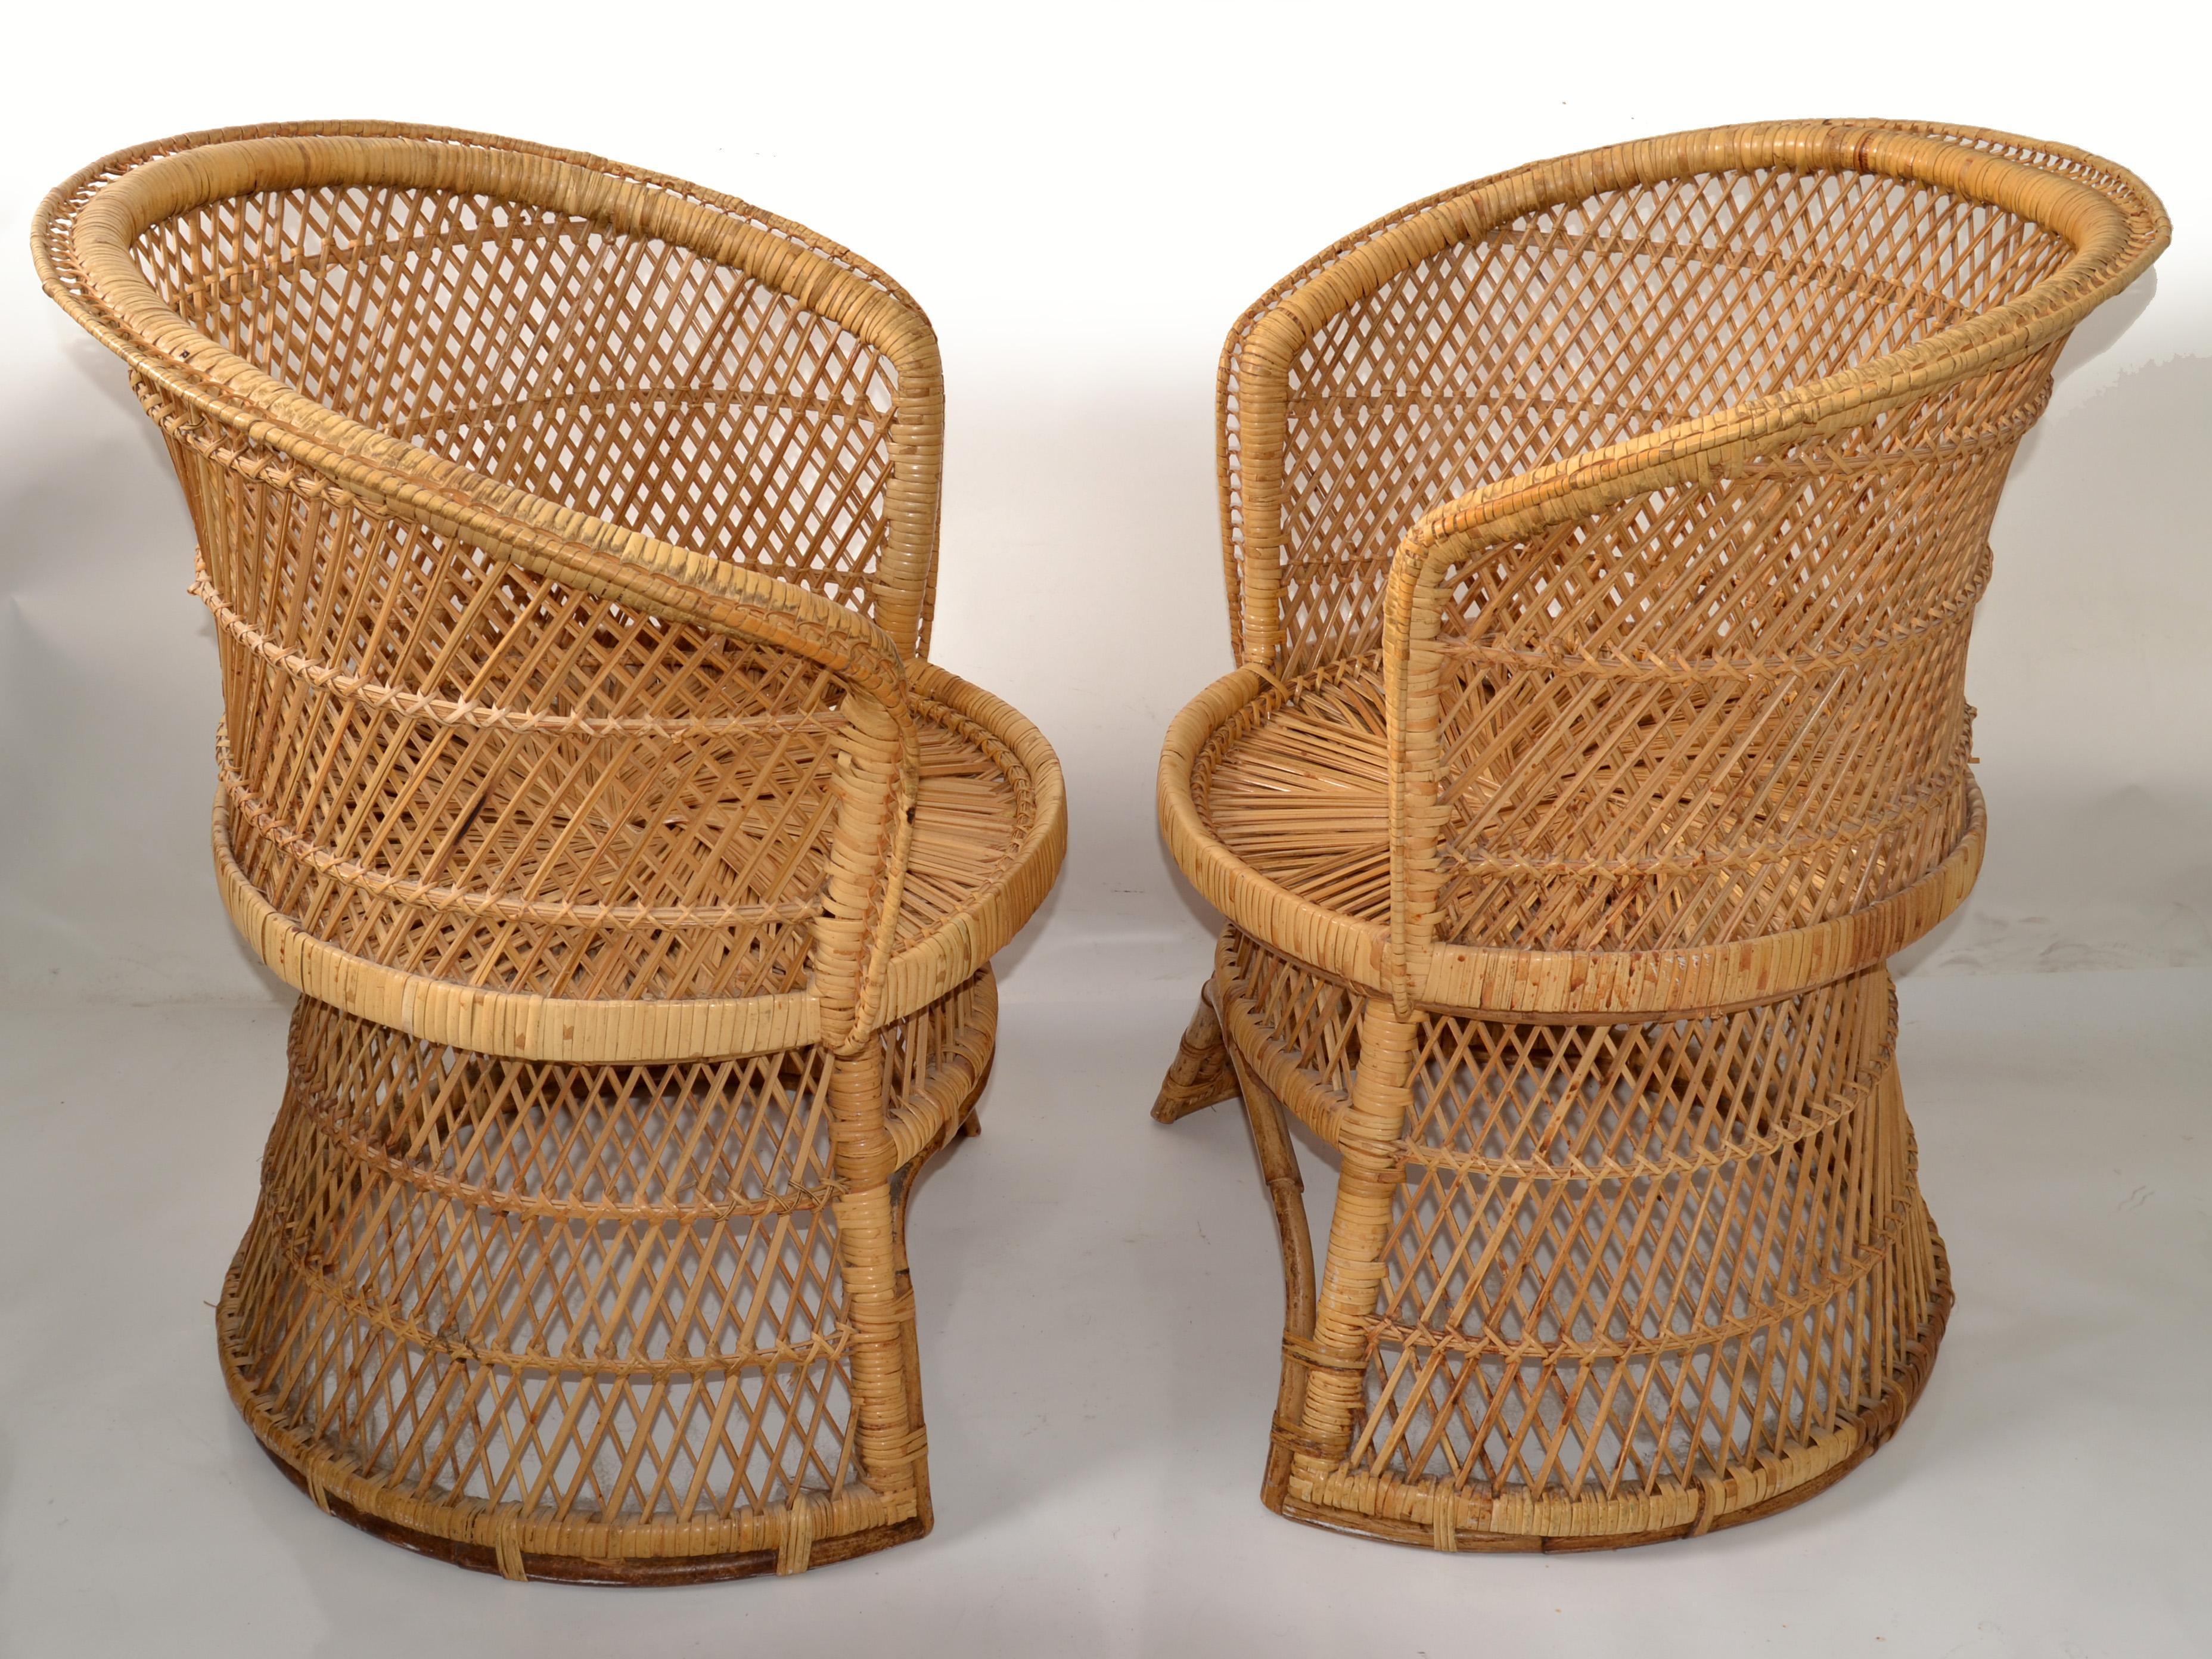 Ensemble vintage de deux fauteuils en rotin, bambou et osier. Ces chaises sont fabriquées à la main avec des sièges en canne, des cadres en bambou et des motifs en bambou d'inspiration chinoise. Les dossiers sont conçus avec un motif extraordinaire,